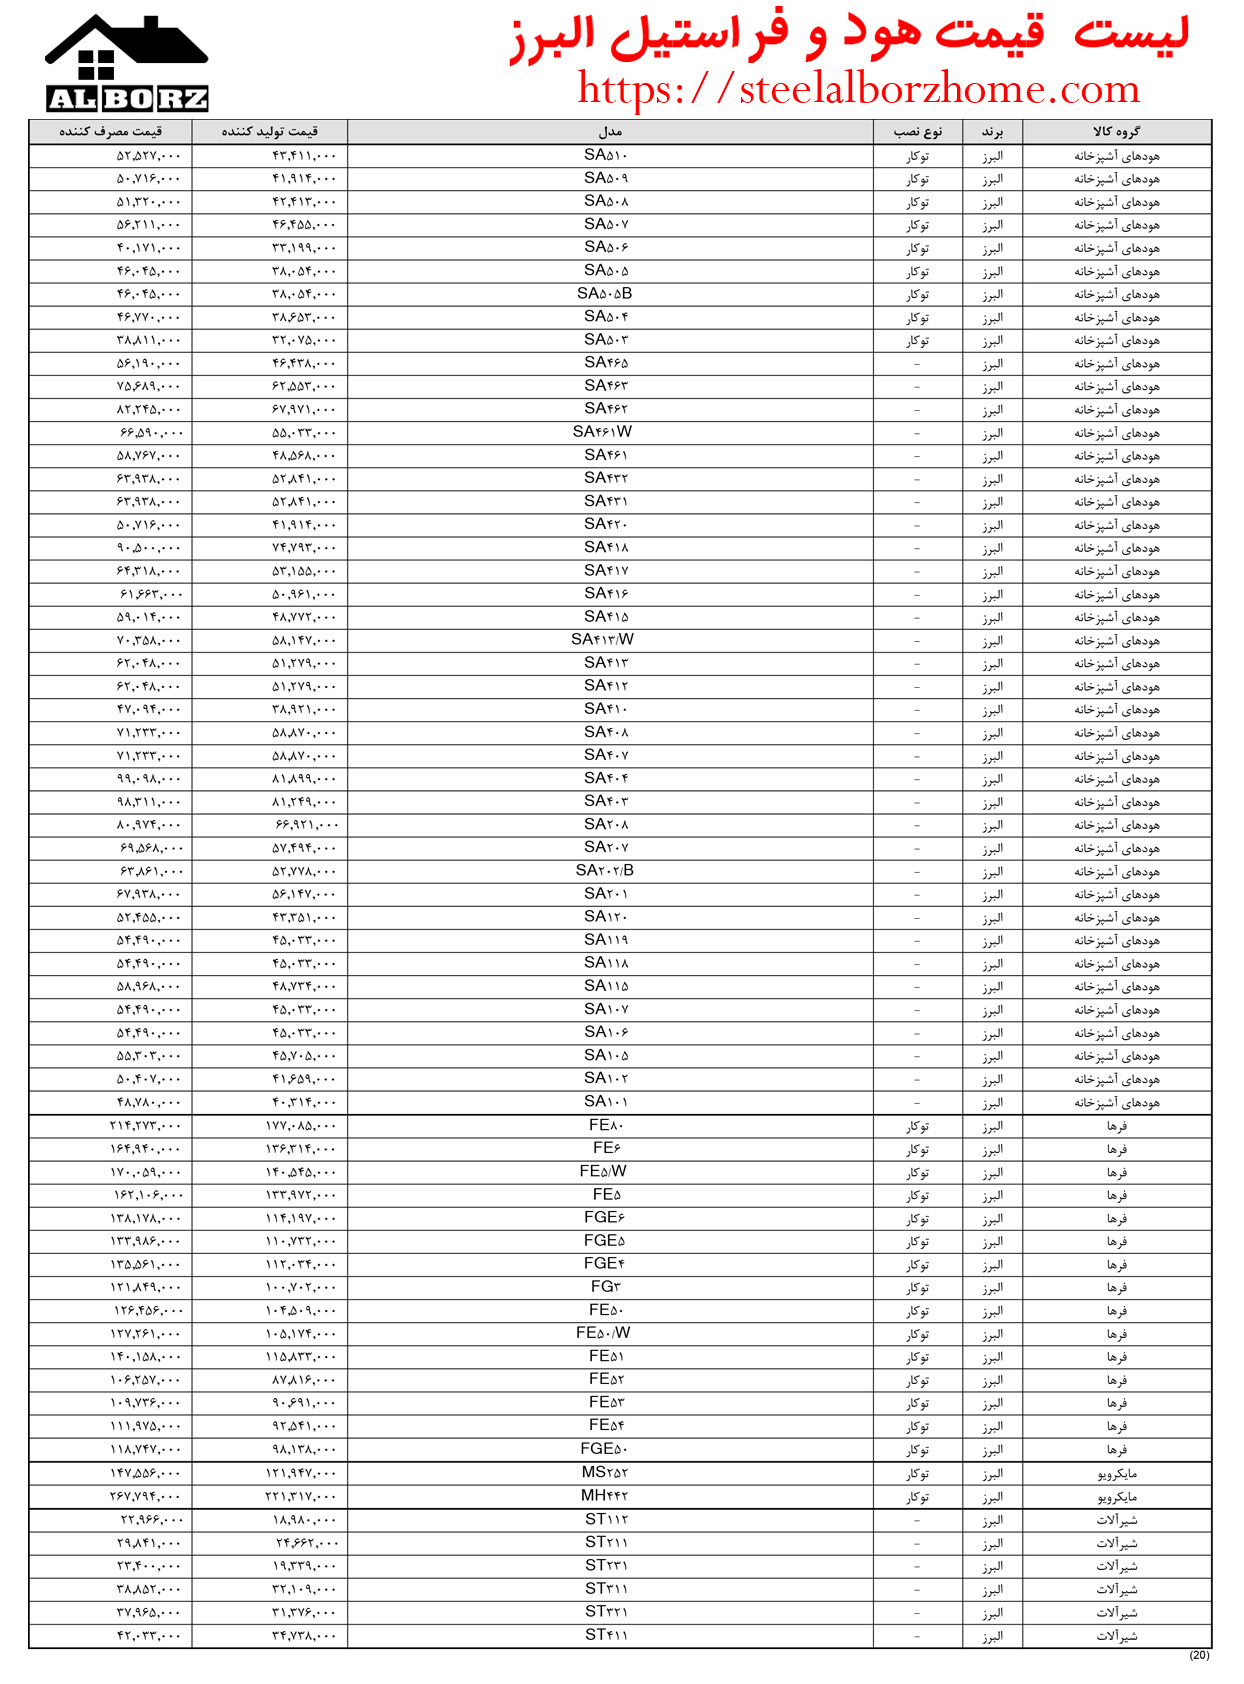 لیست قیمت هود استیل البرز سال 1403